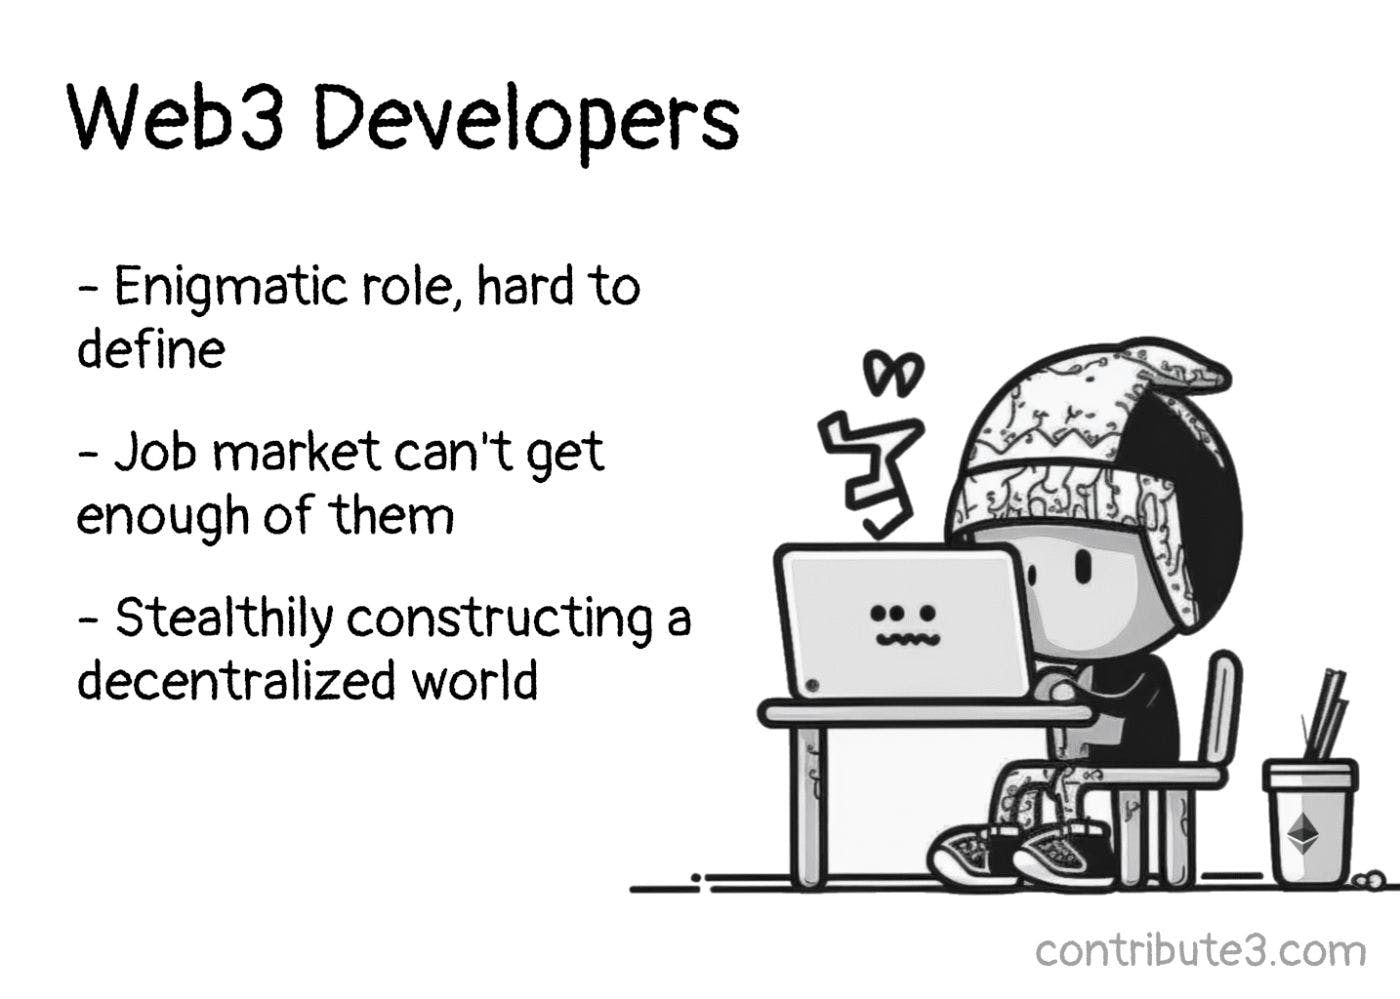 3 ключевые карьеры Web3 для разработчиков: протоколы, смарт-контракты, приложения